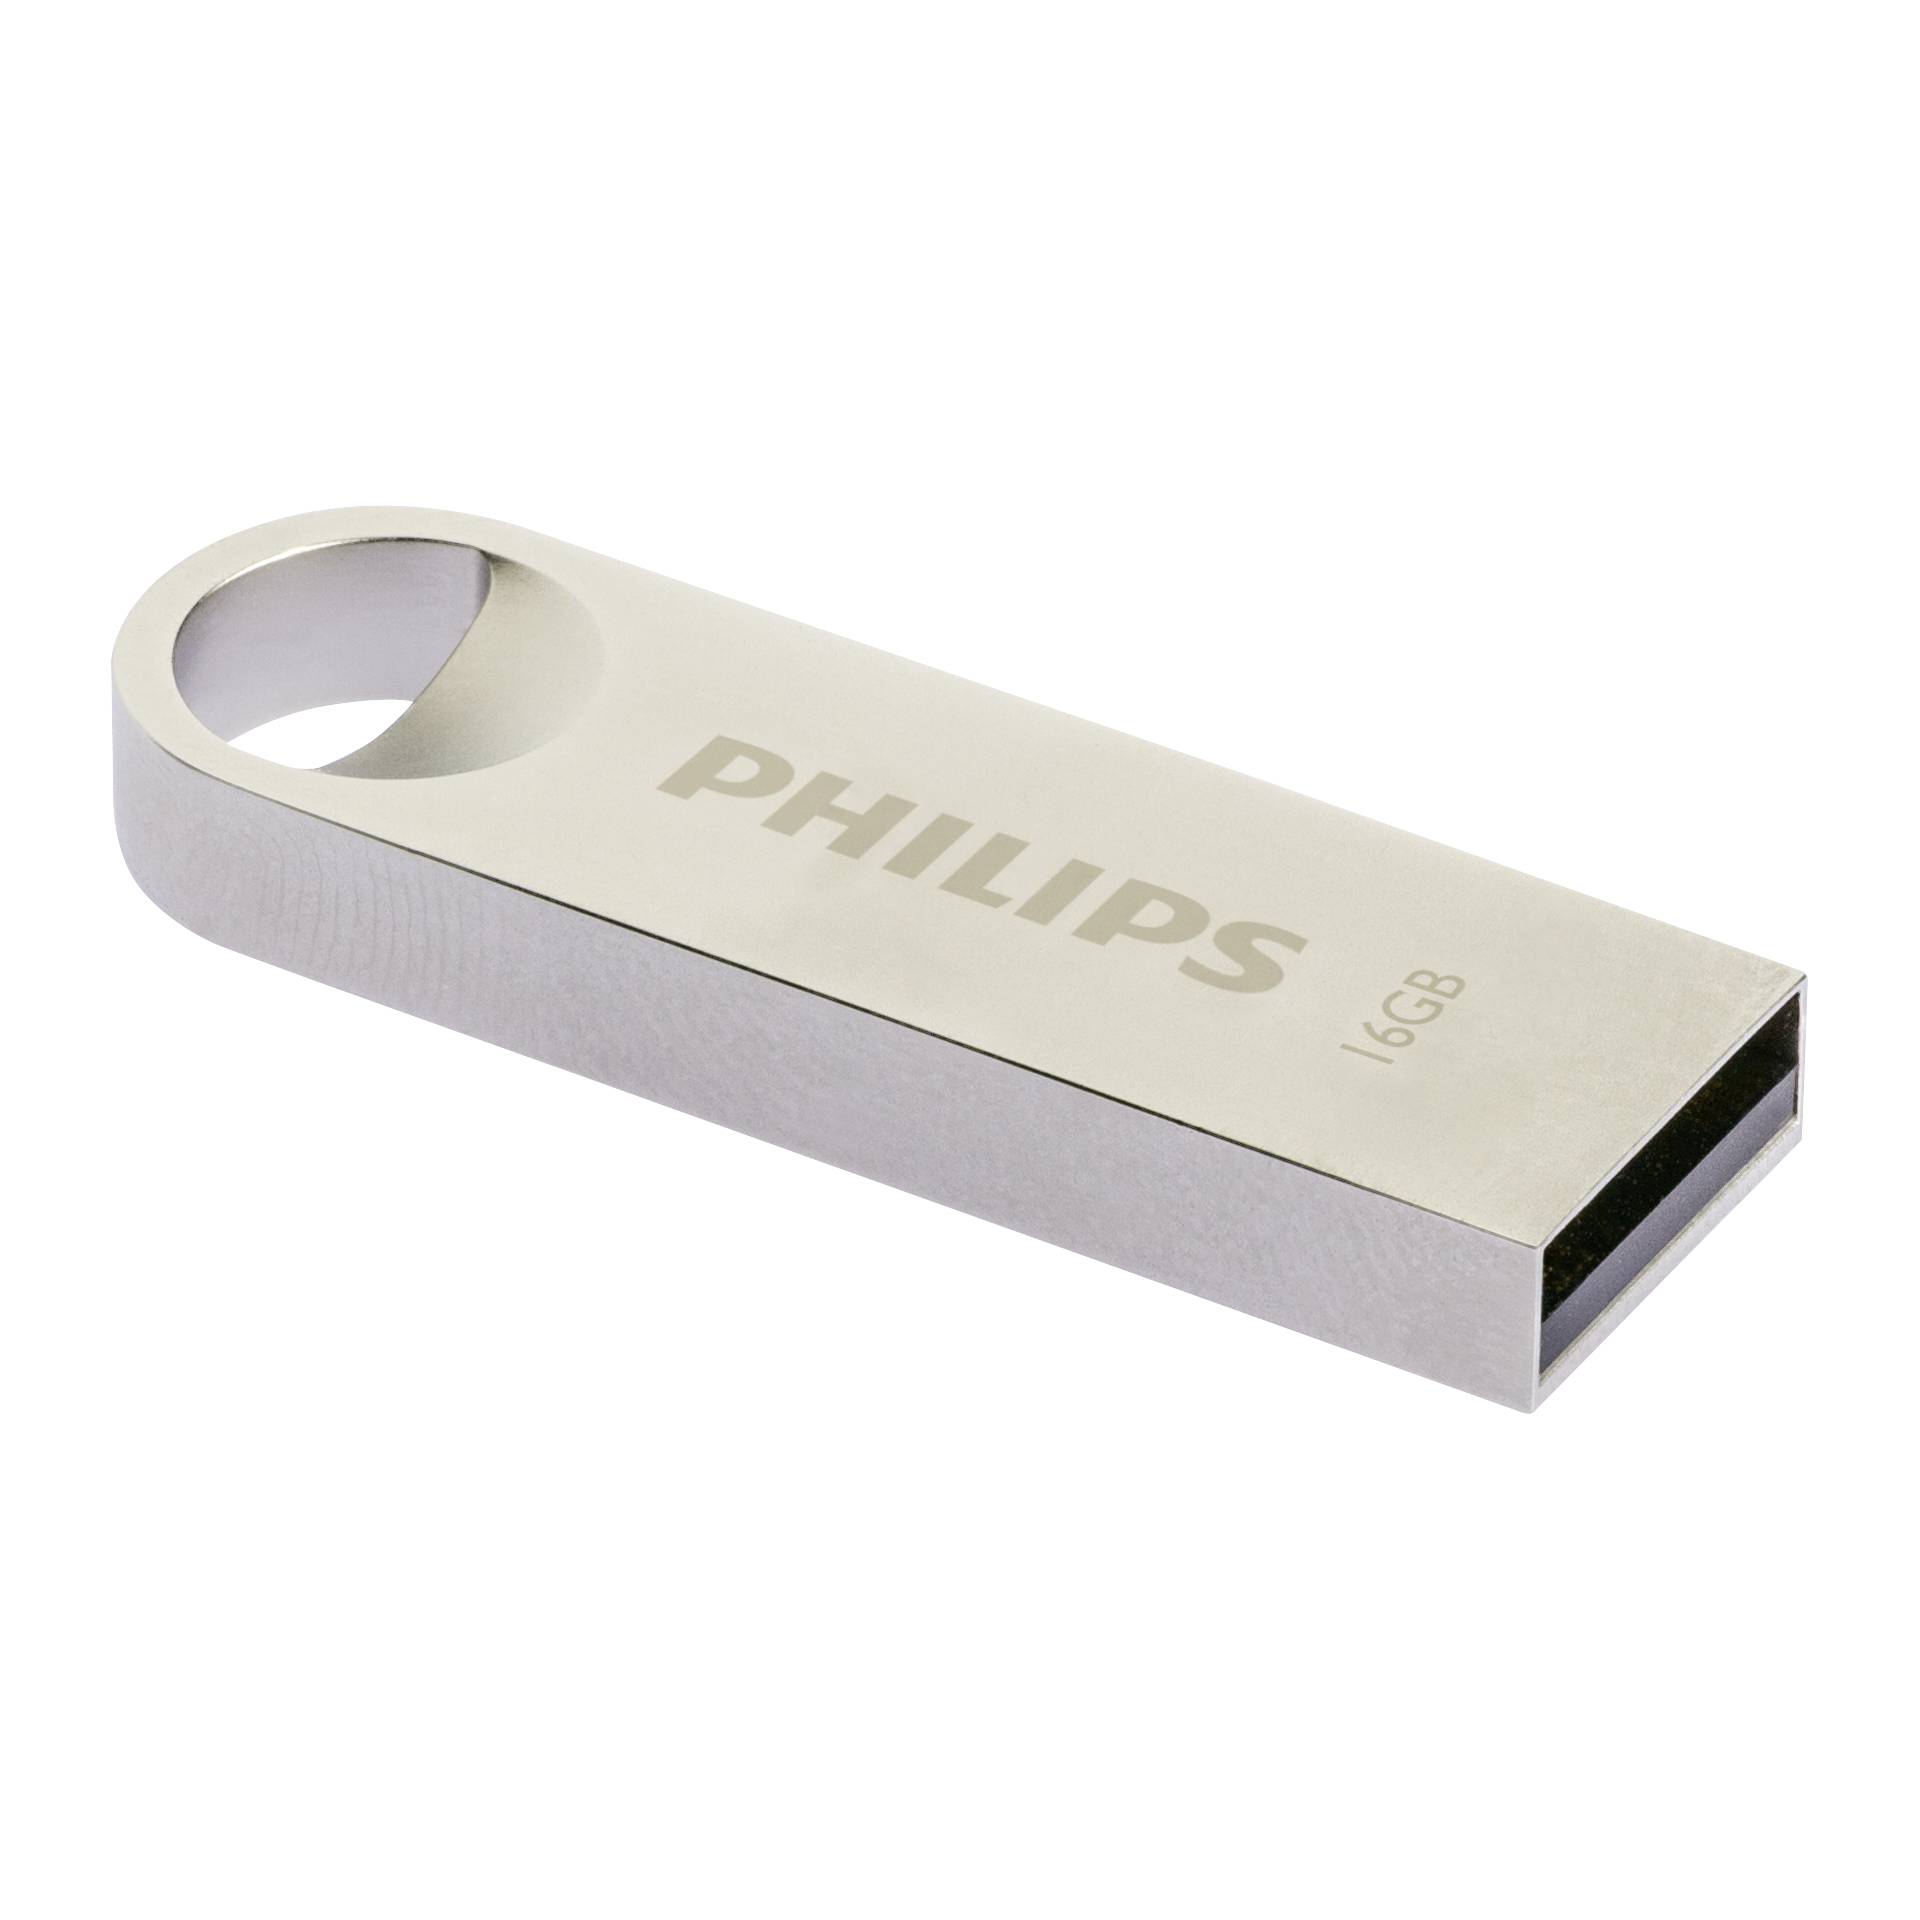 Philips USB 2.0             16GB Moon